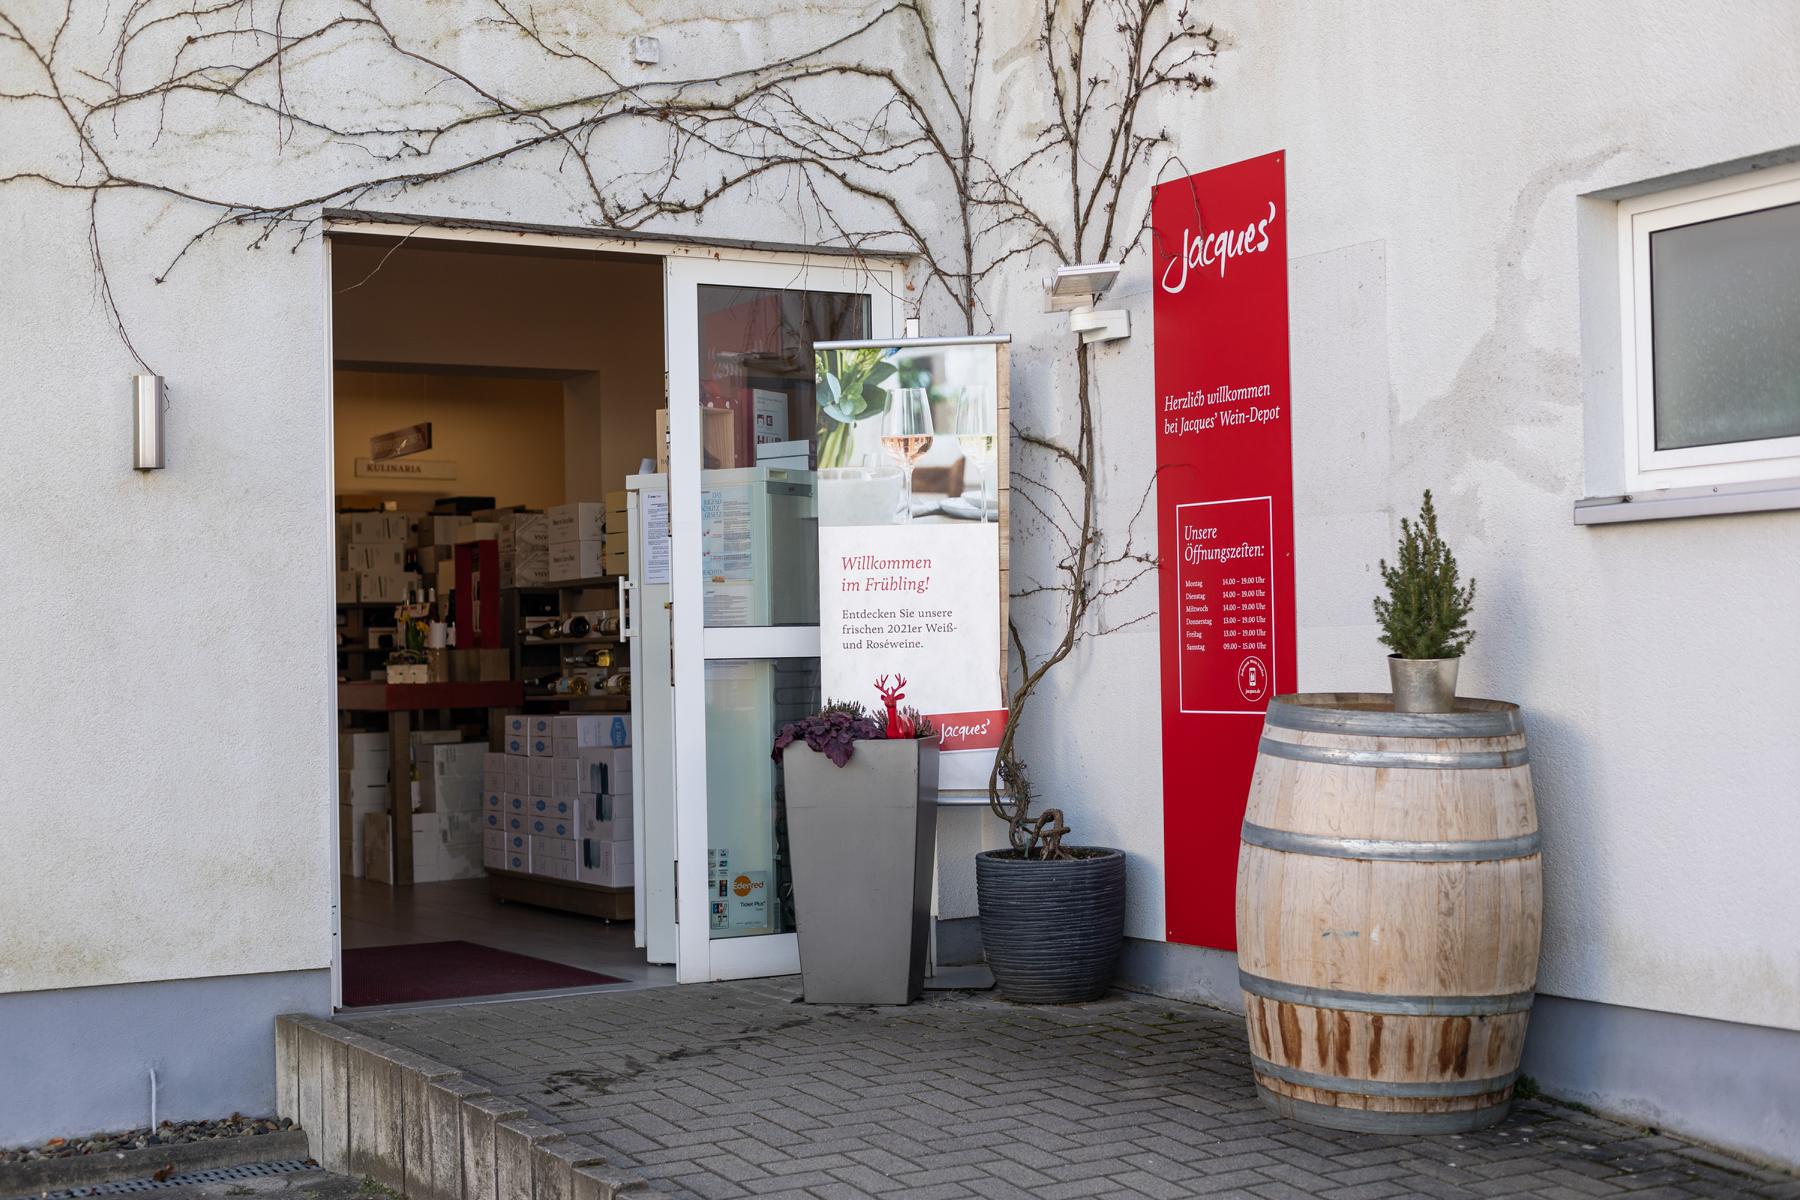 Bilder Jacques’ Wein-Depot Wolfsburg